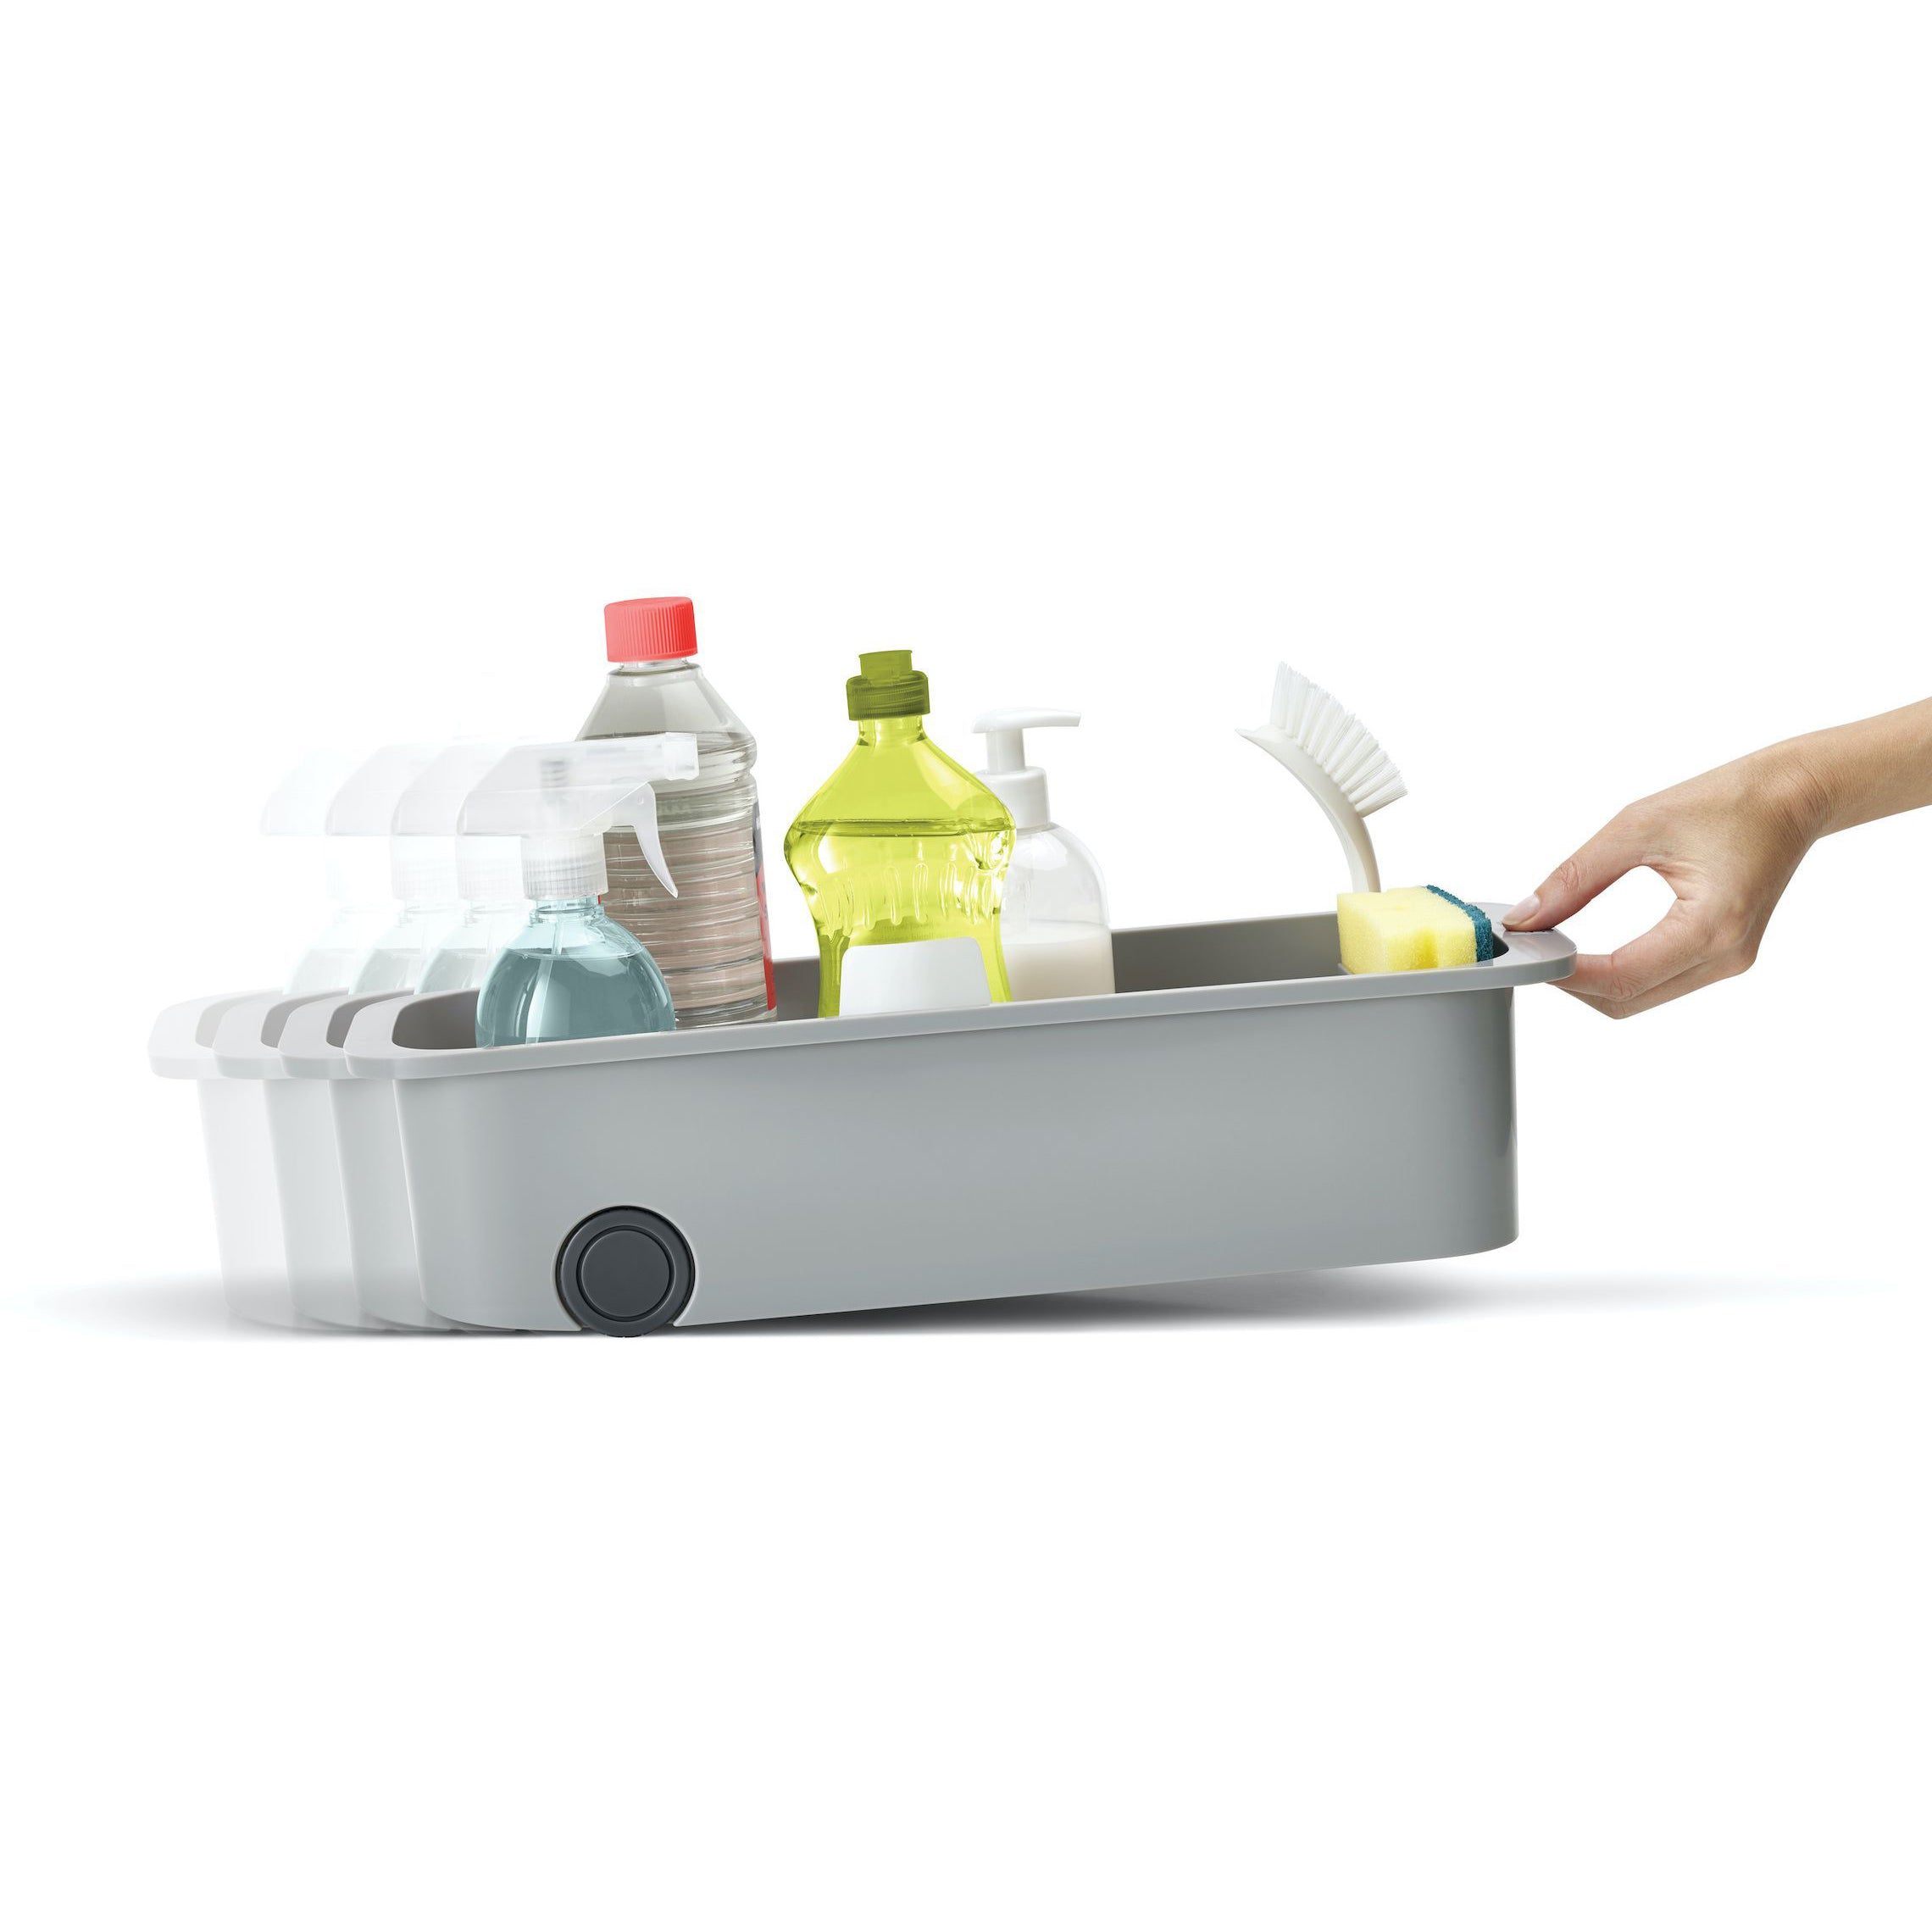 Keukenkast organizer CupboardStore met wieltjes met schoonmaakmiddelen en spons in sponsvakje